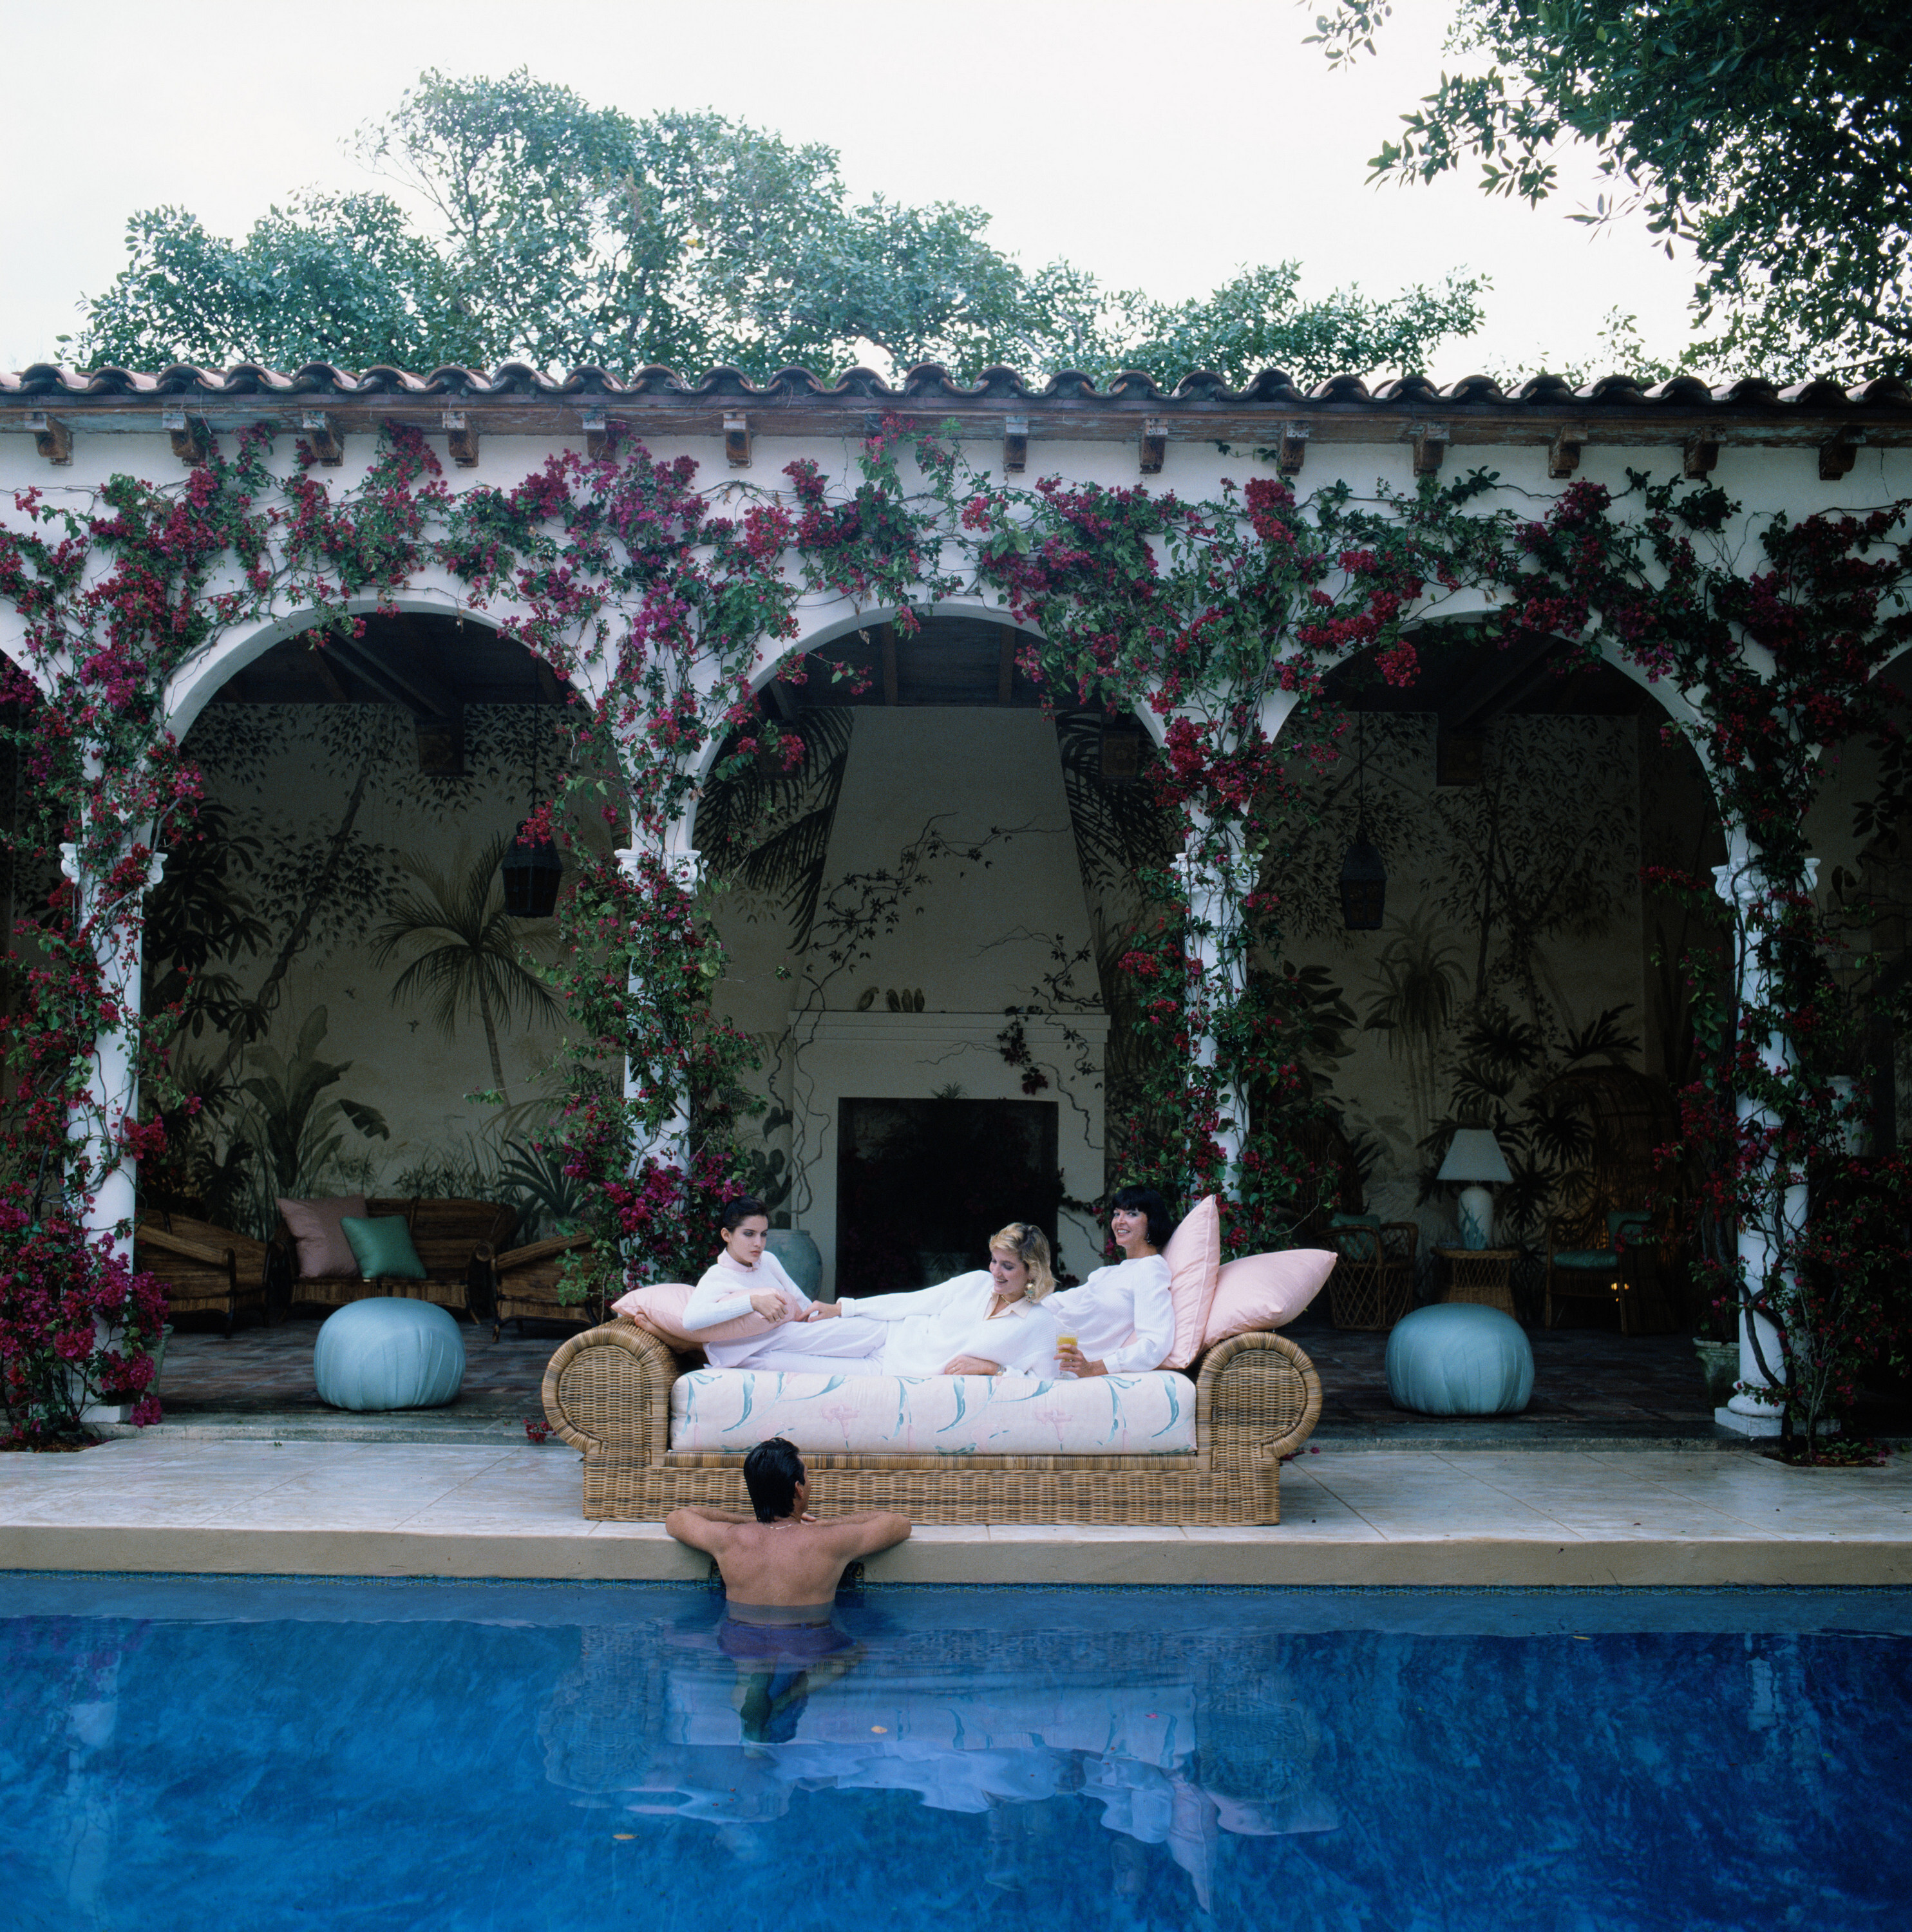 Диван у бассейна, 1984 год. Фотограф Слим Ааронс